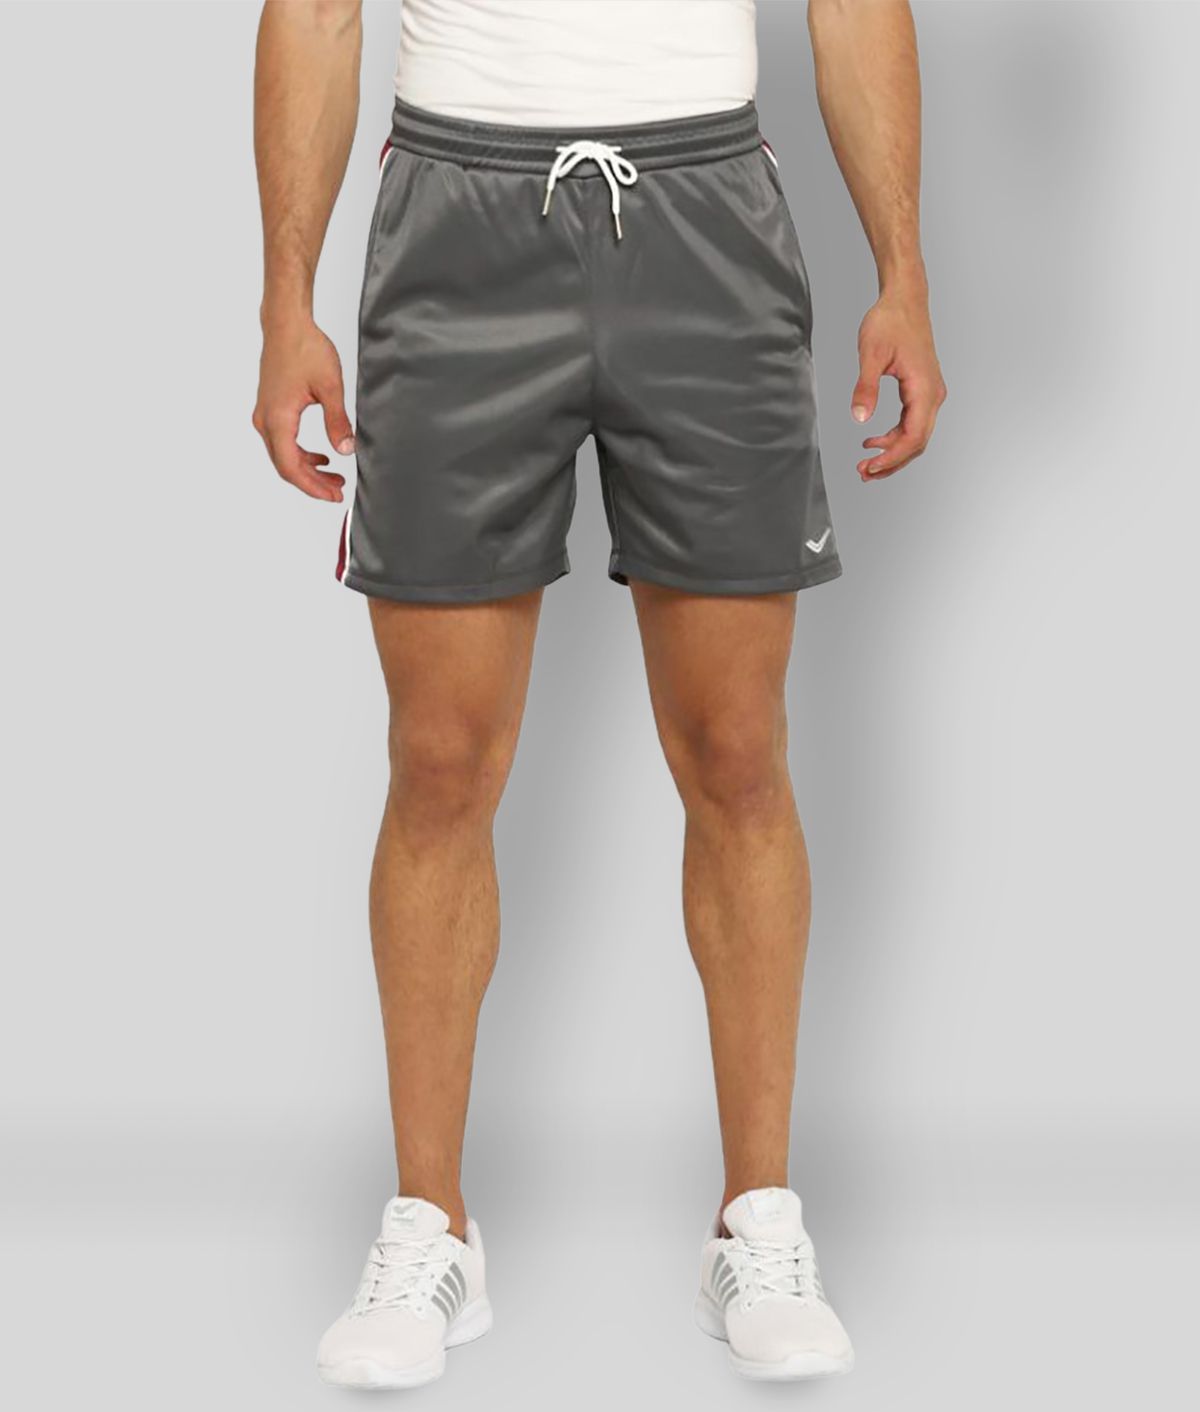 YUUKI Dark Grey Polyester Running Shorts